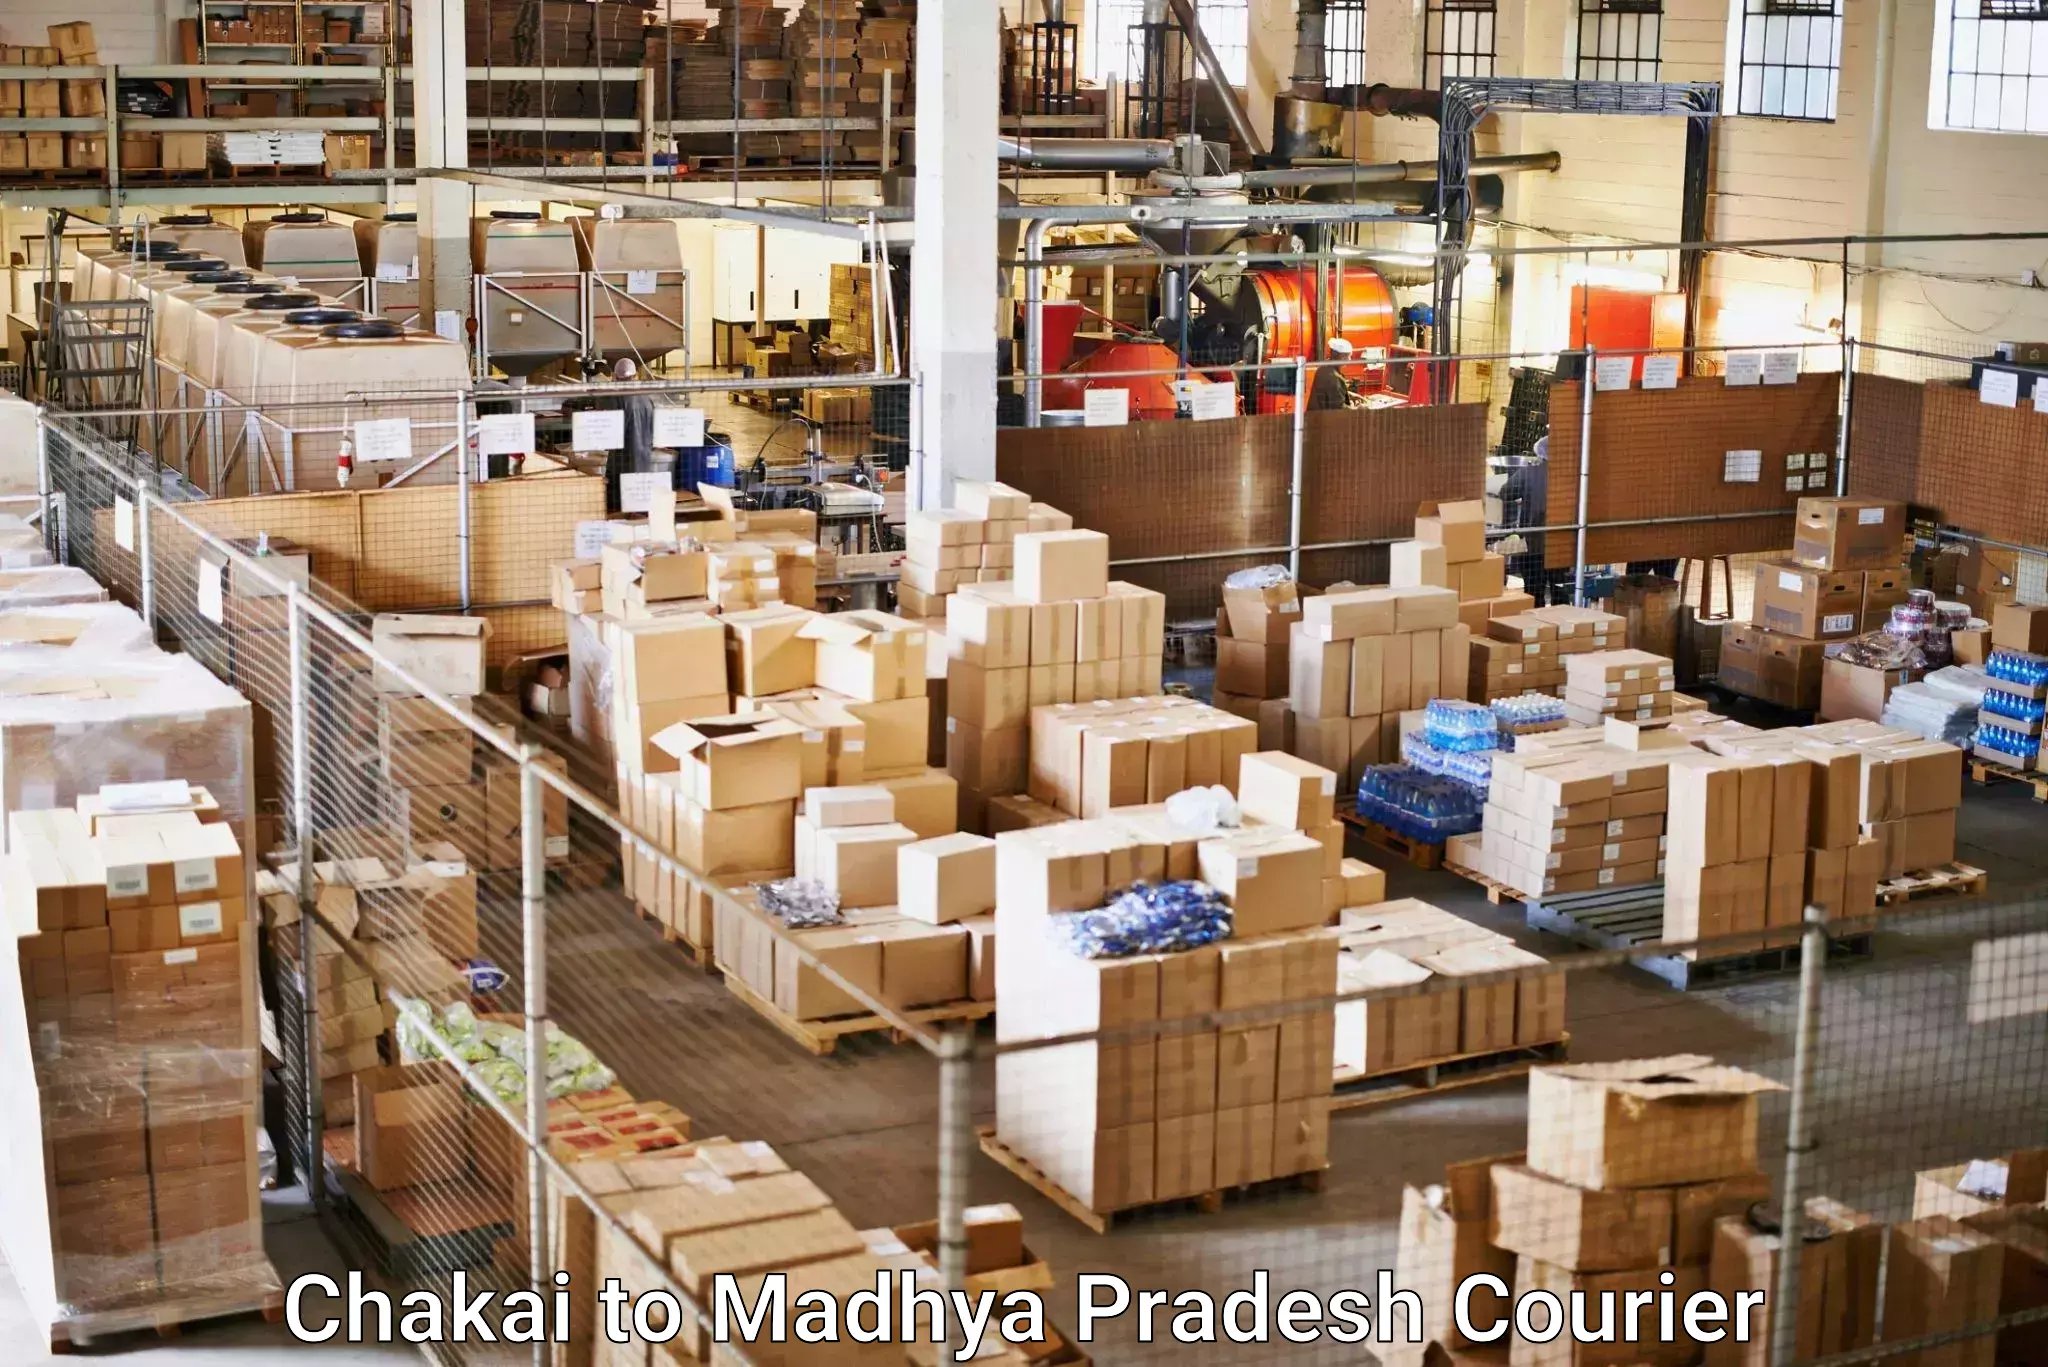 Express logistics service Chakai to Datia